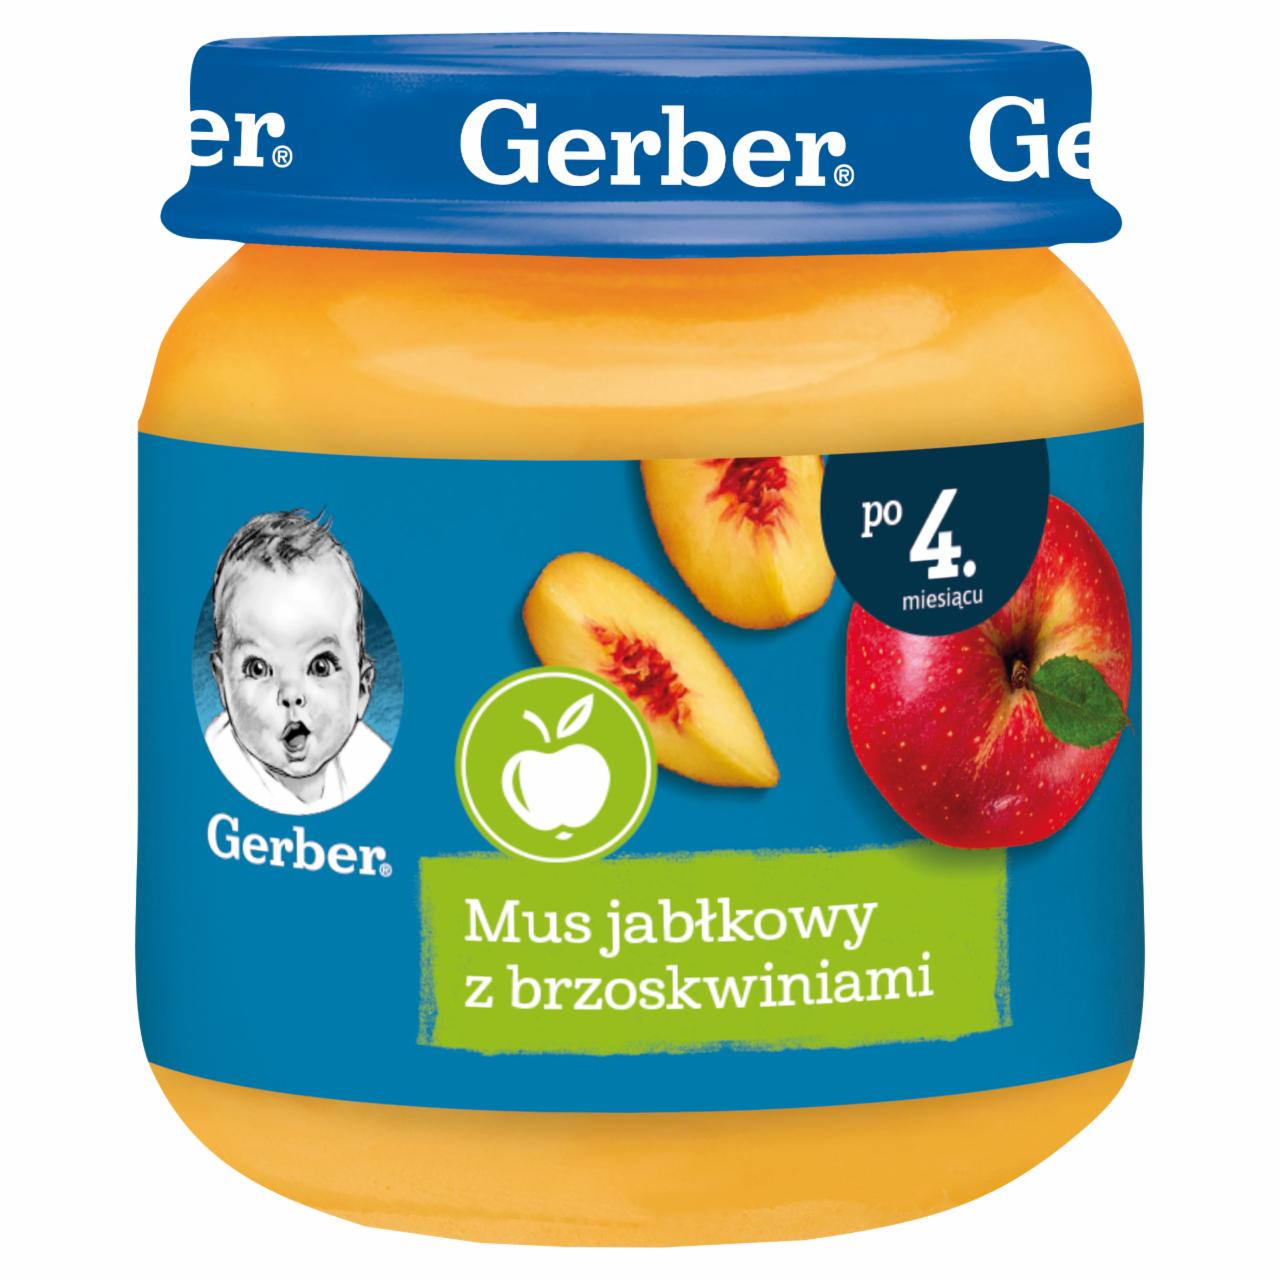 Zdjęcia - Gerber Mus jabłkowy z brzoskwiniami dla niemowląt po 4. miesiącu 125 g